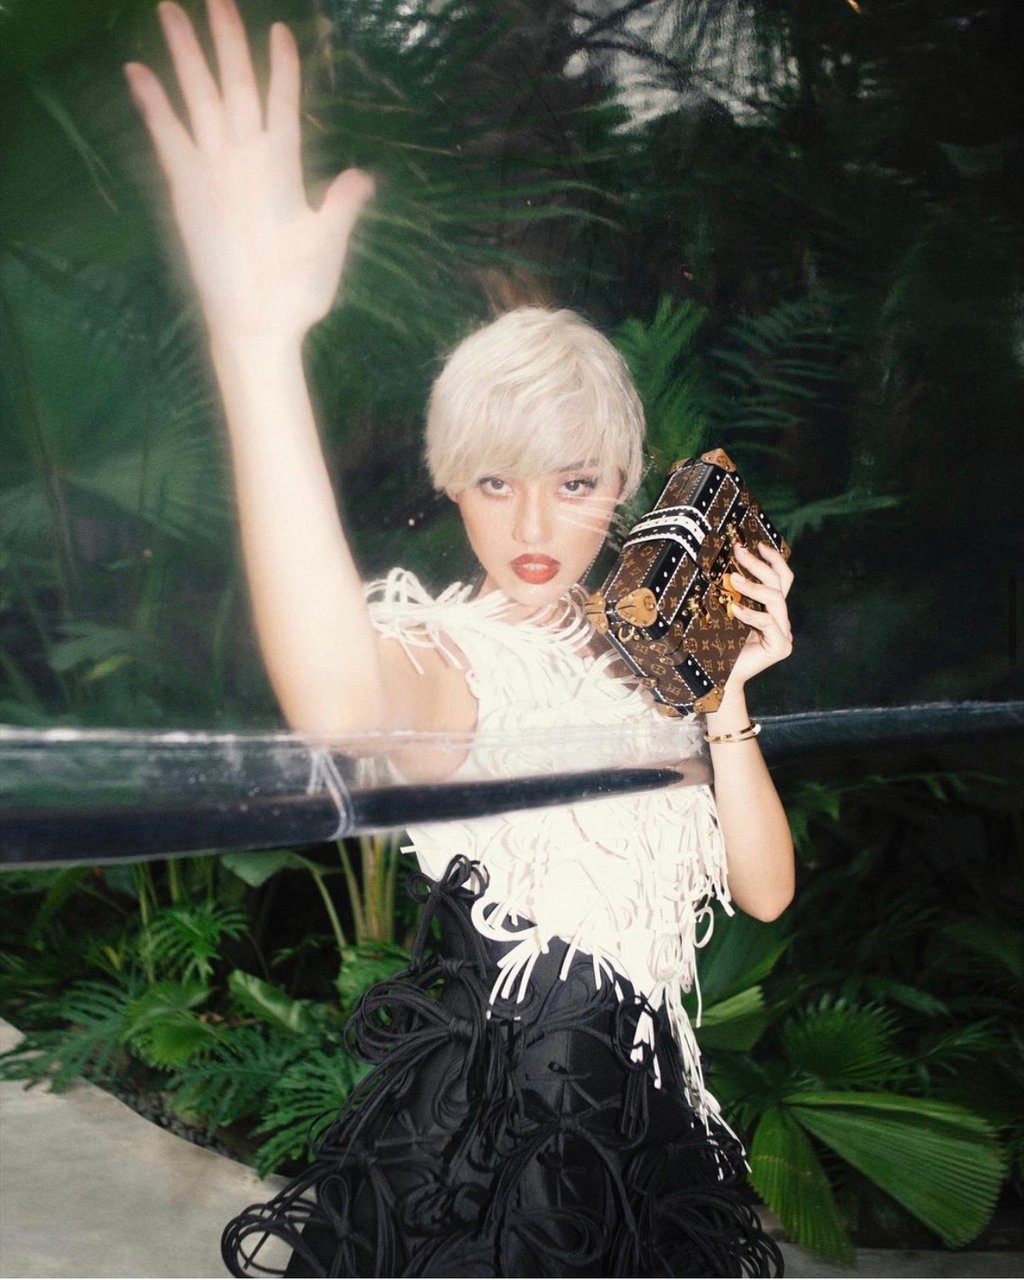 Trước đó, fashionista Khánh Linh cũng từng diện thiết kế này của NTK Công Trí trong một bộ ảnh thời trang.